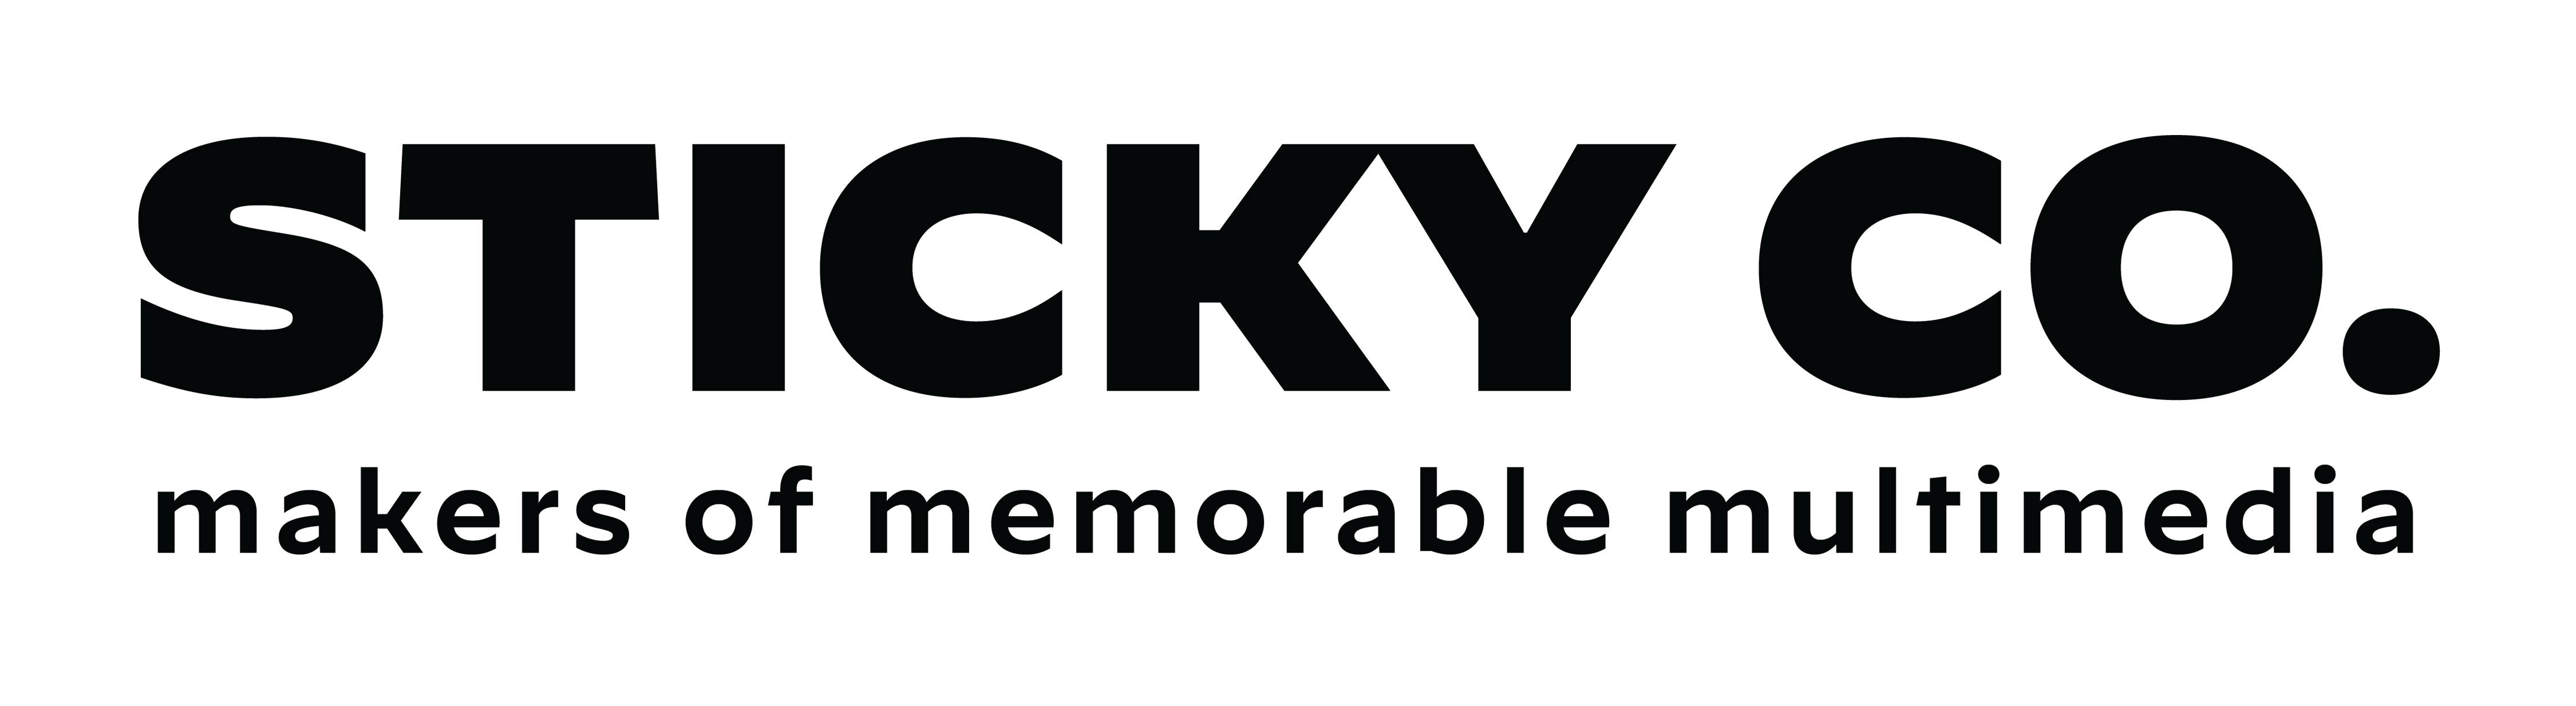 Sticky Co. logo